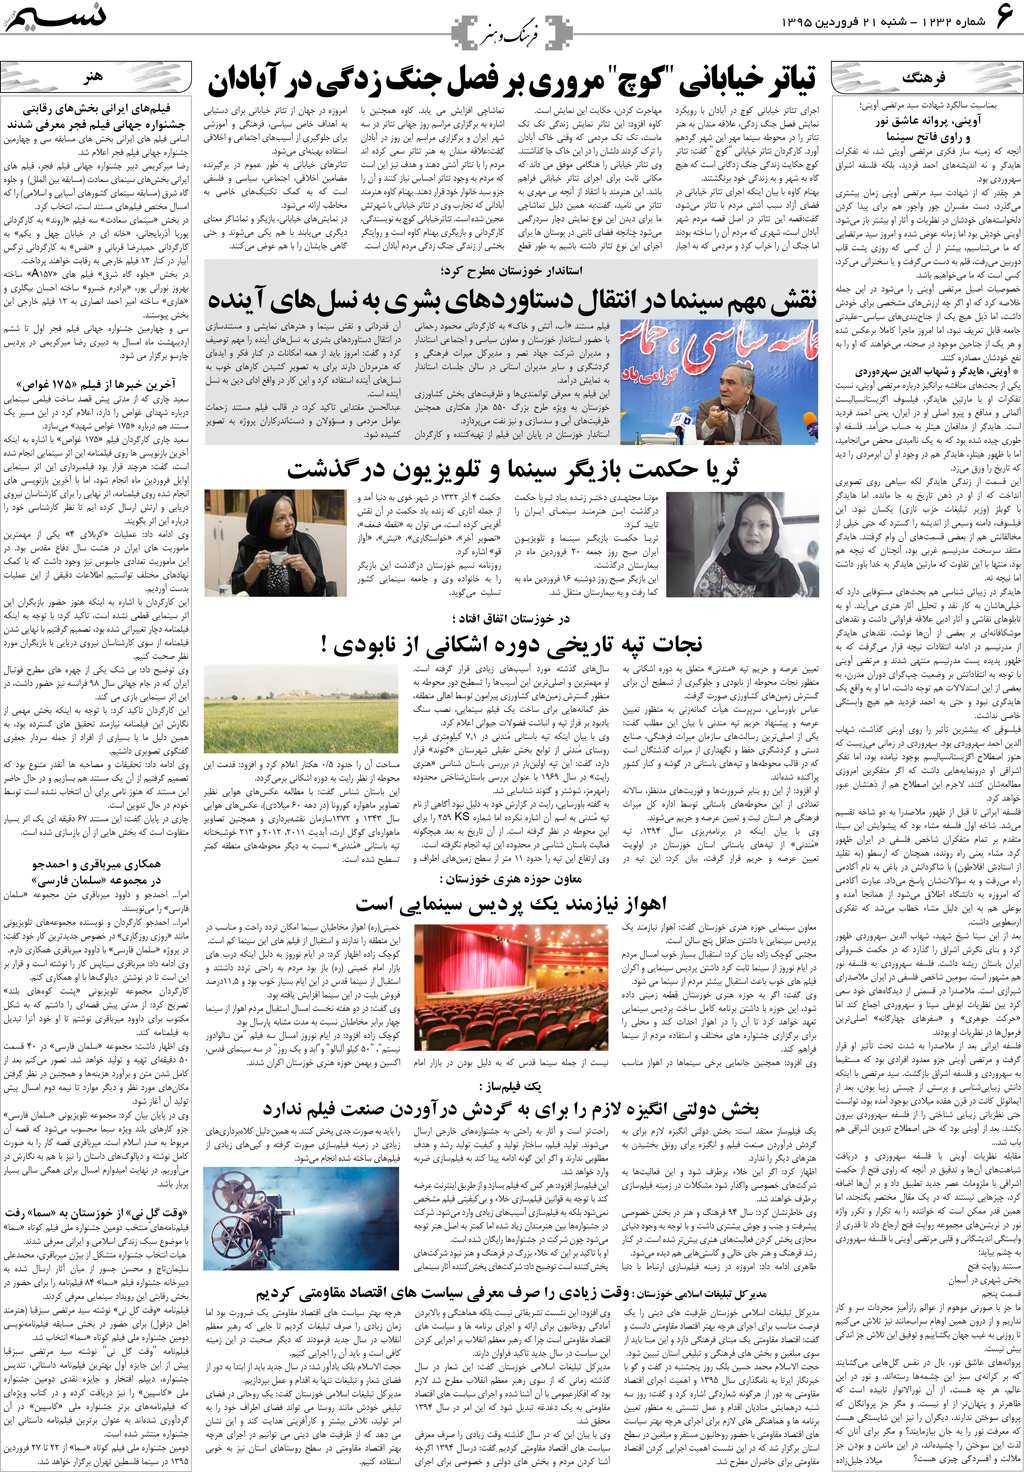 صفحه فرهنگ و هنر روزنامه نسیم شماره 1232